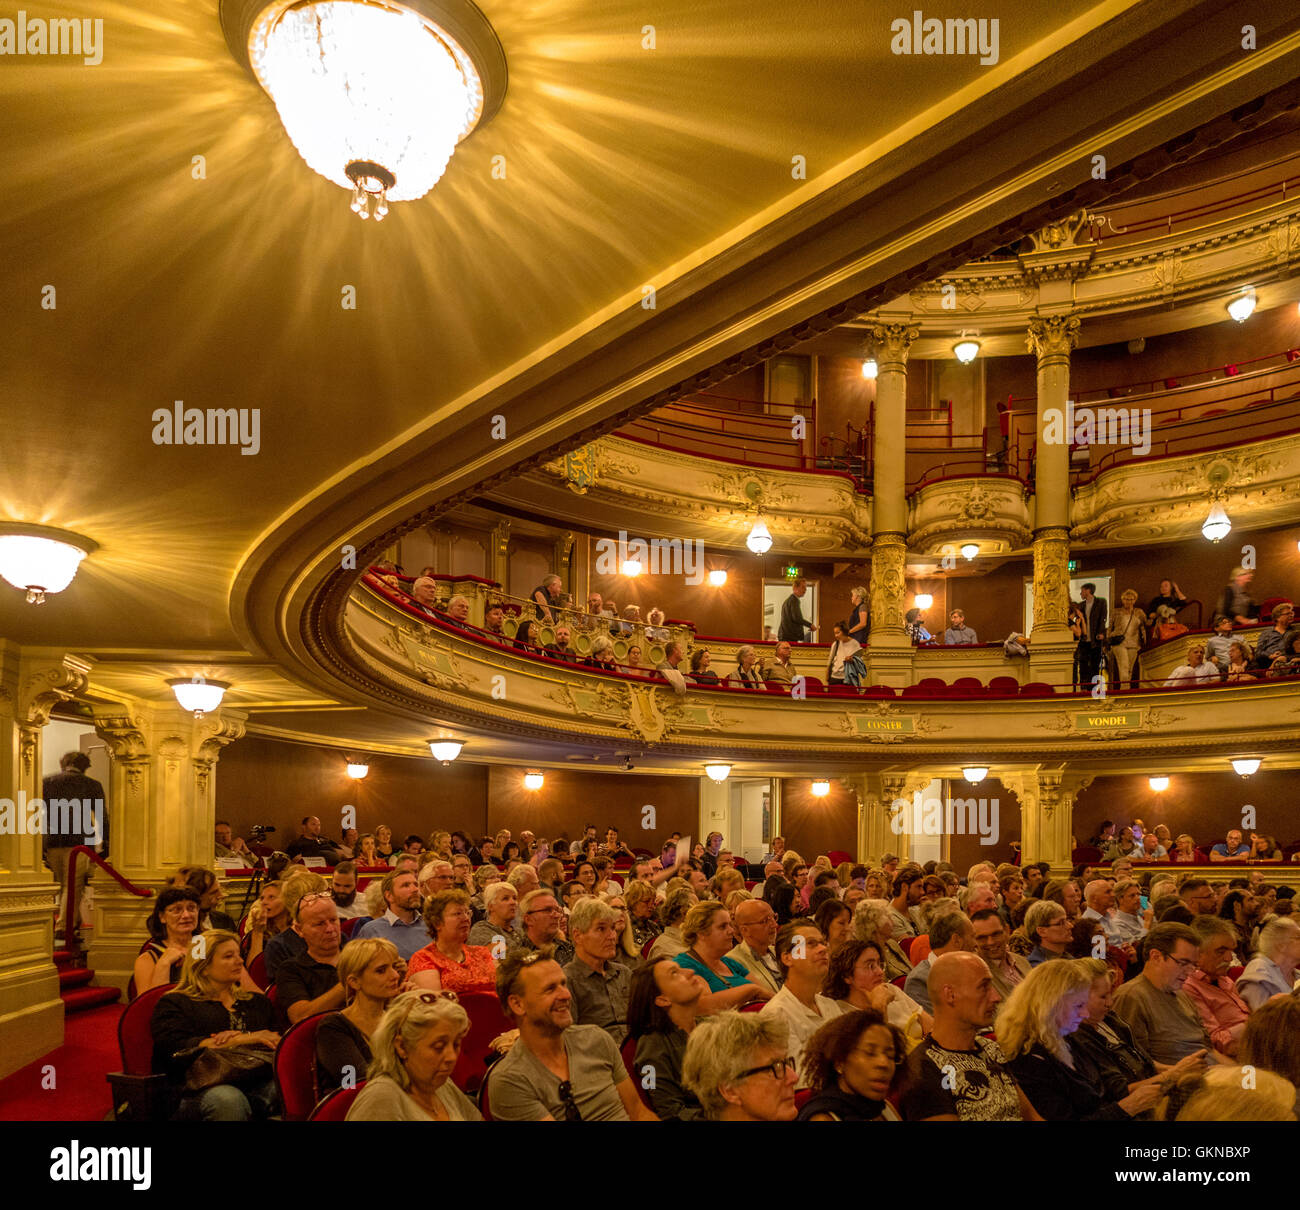 Théâtre Municipal d'Amsterdam - Néerlandais : Stadsschouwburg - intérieur avec les gens. Banque D'Images